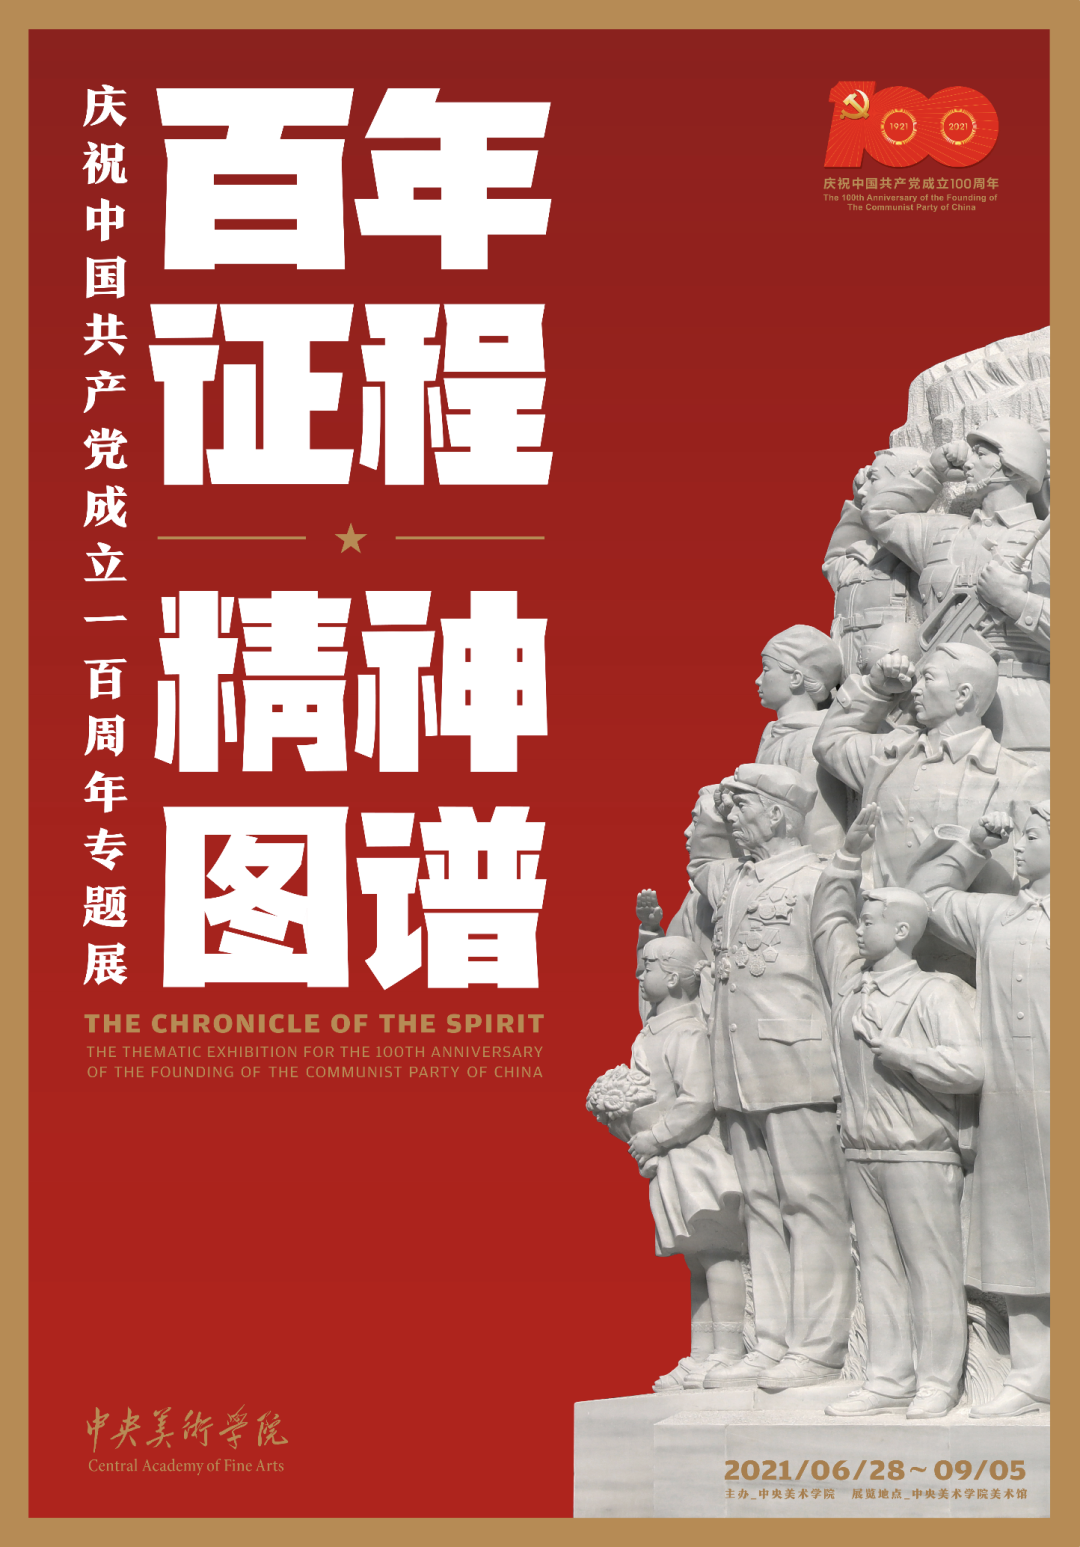 《“百年征程 精神图谱——庆祝中国共产党成立100周年专题展”》海报设计 2021